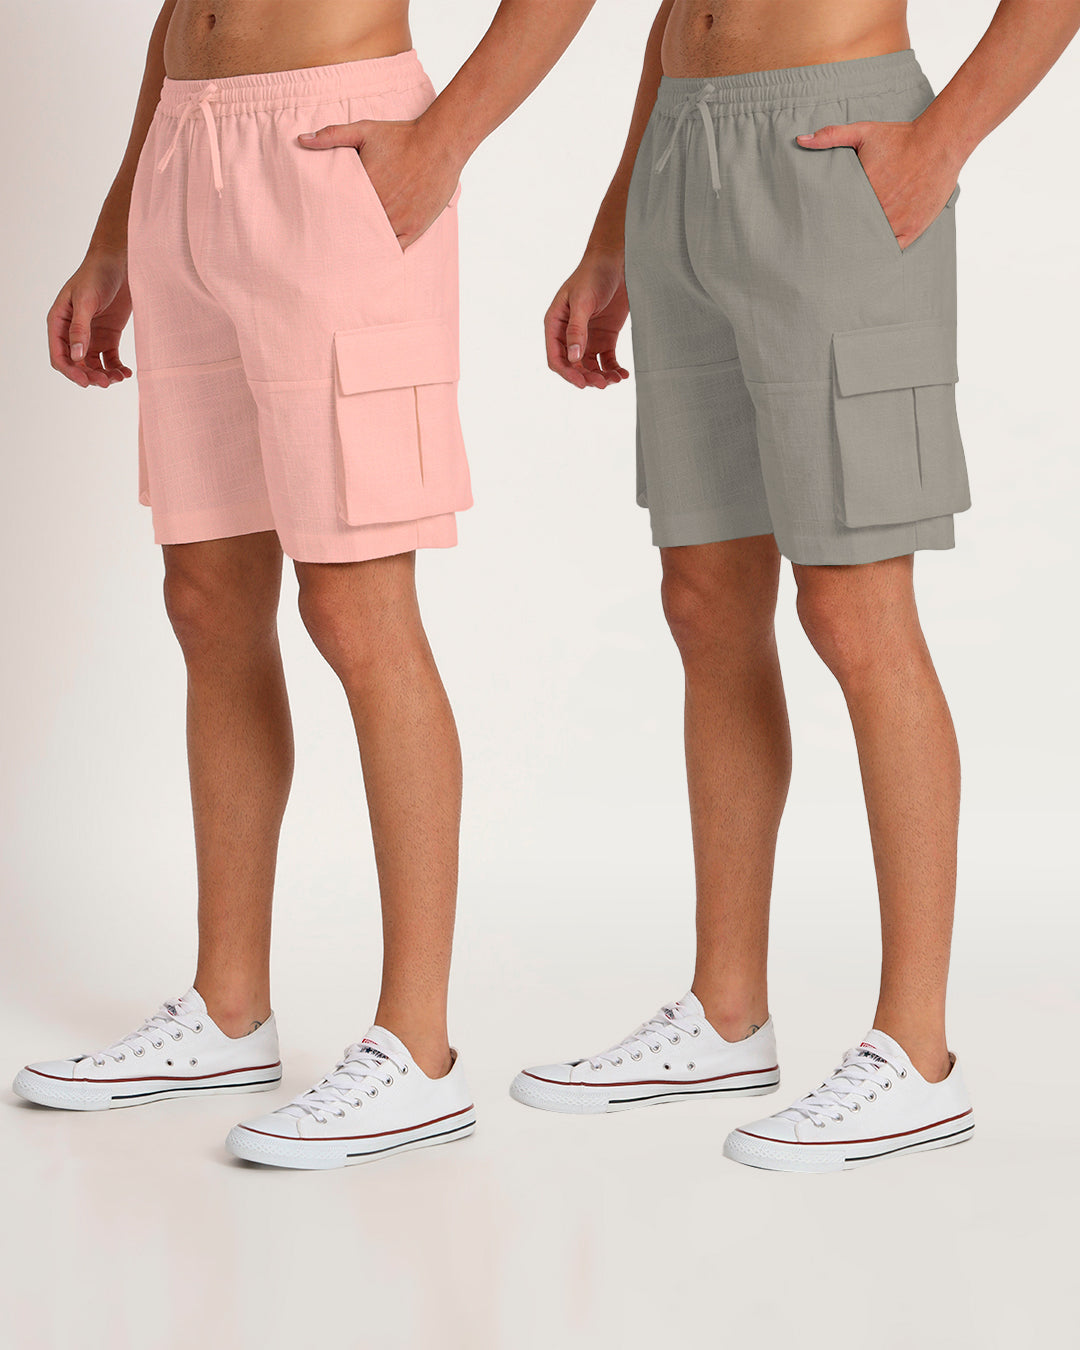 Combo : Slub Comfort Cargo Shorts Grey & Fondant Pink Men's Shorts